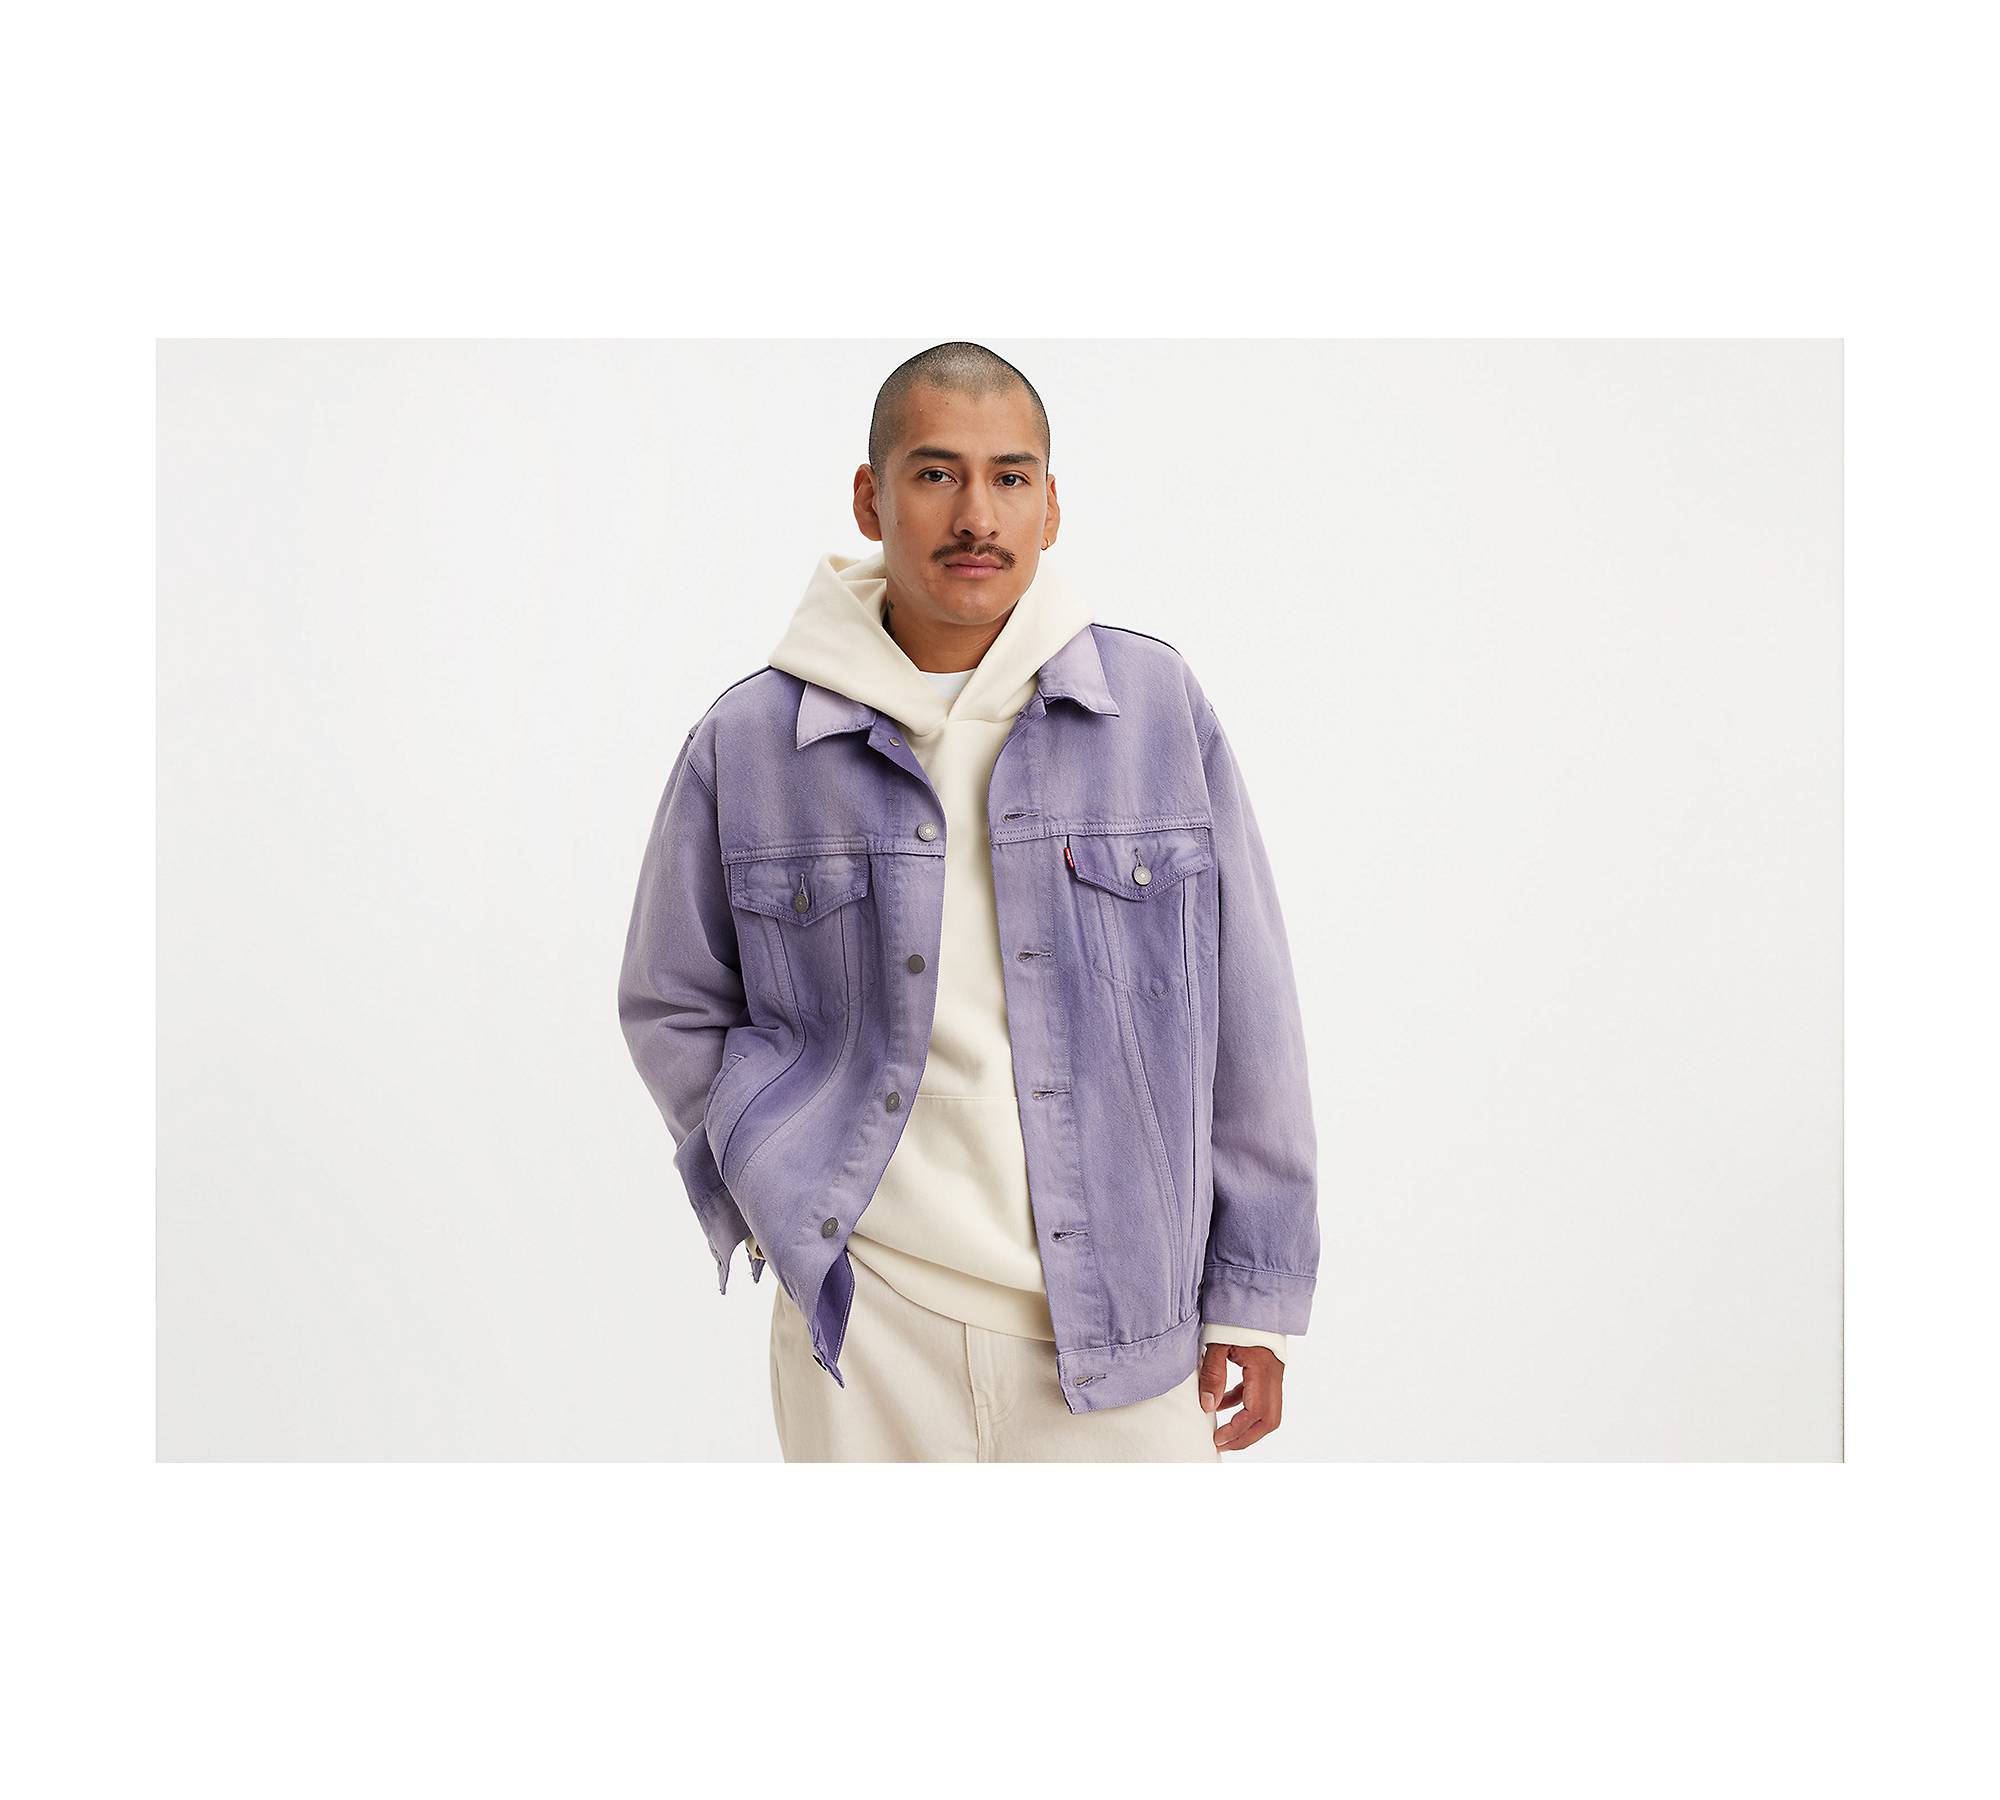 Levi's Relaxed Fit Trucker Jacket - Men's - Purple Garment Dye M